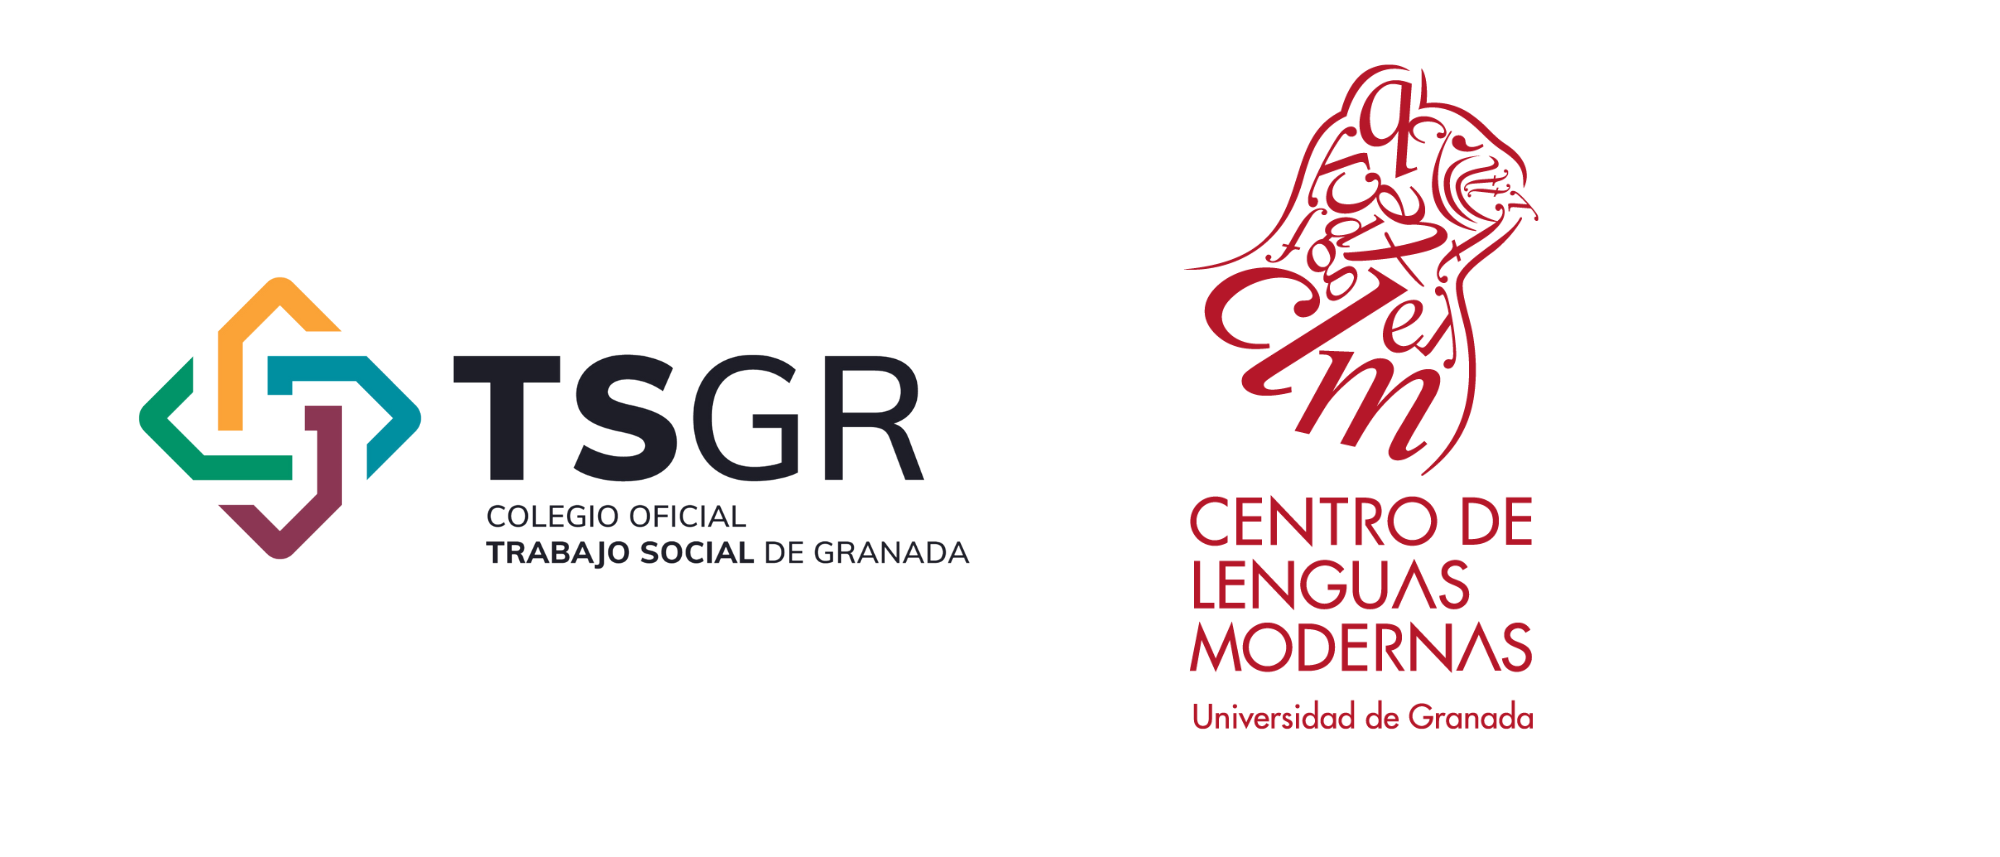 El COTS Granada firma convenio con el Centro de Lenguas Modernas de la Universidad de Granada